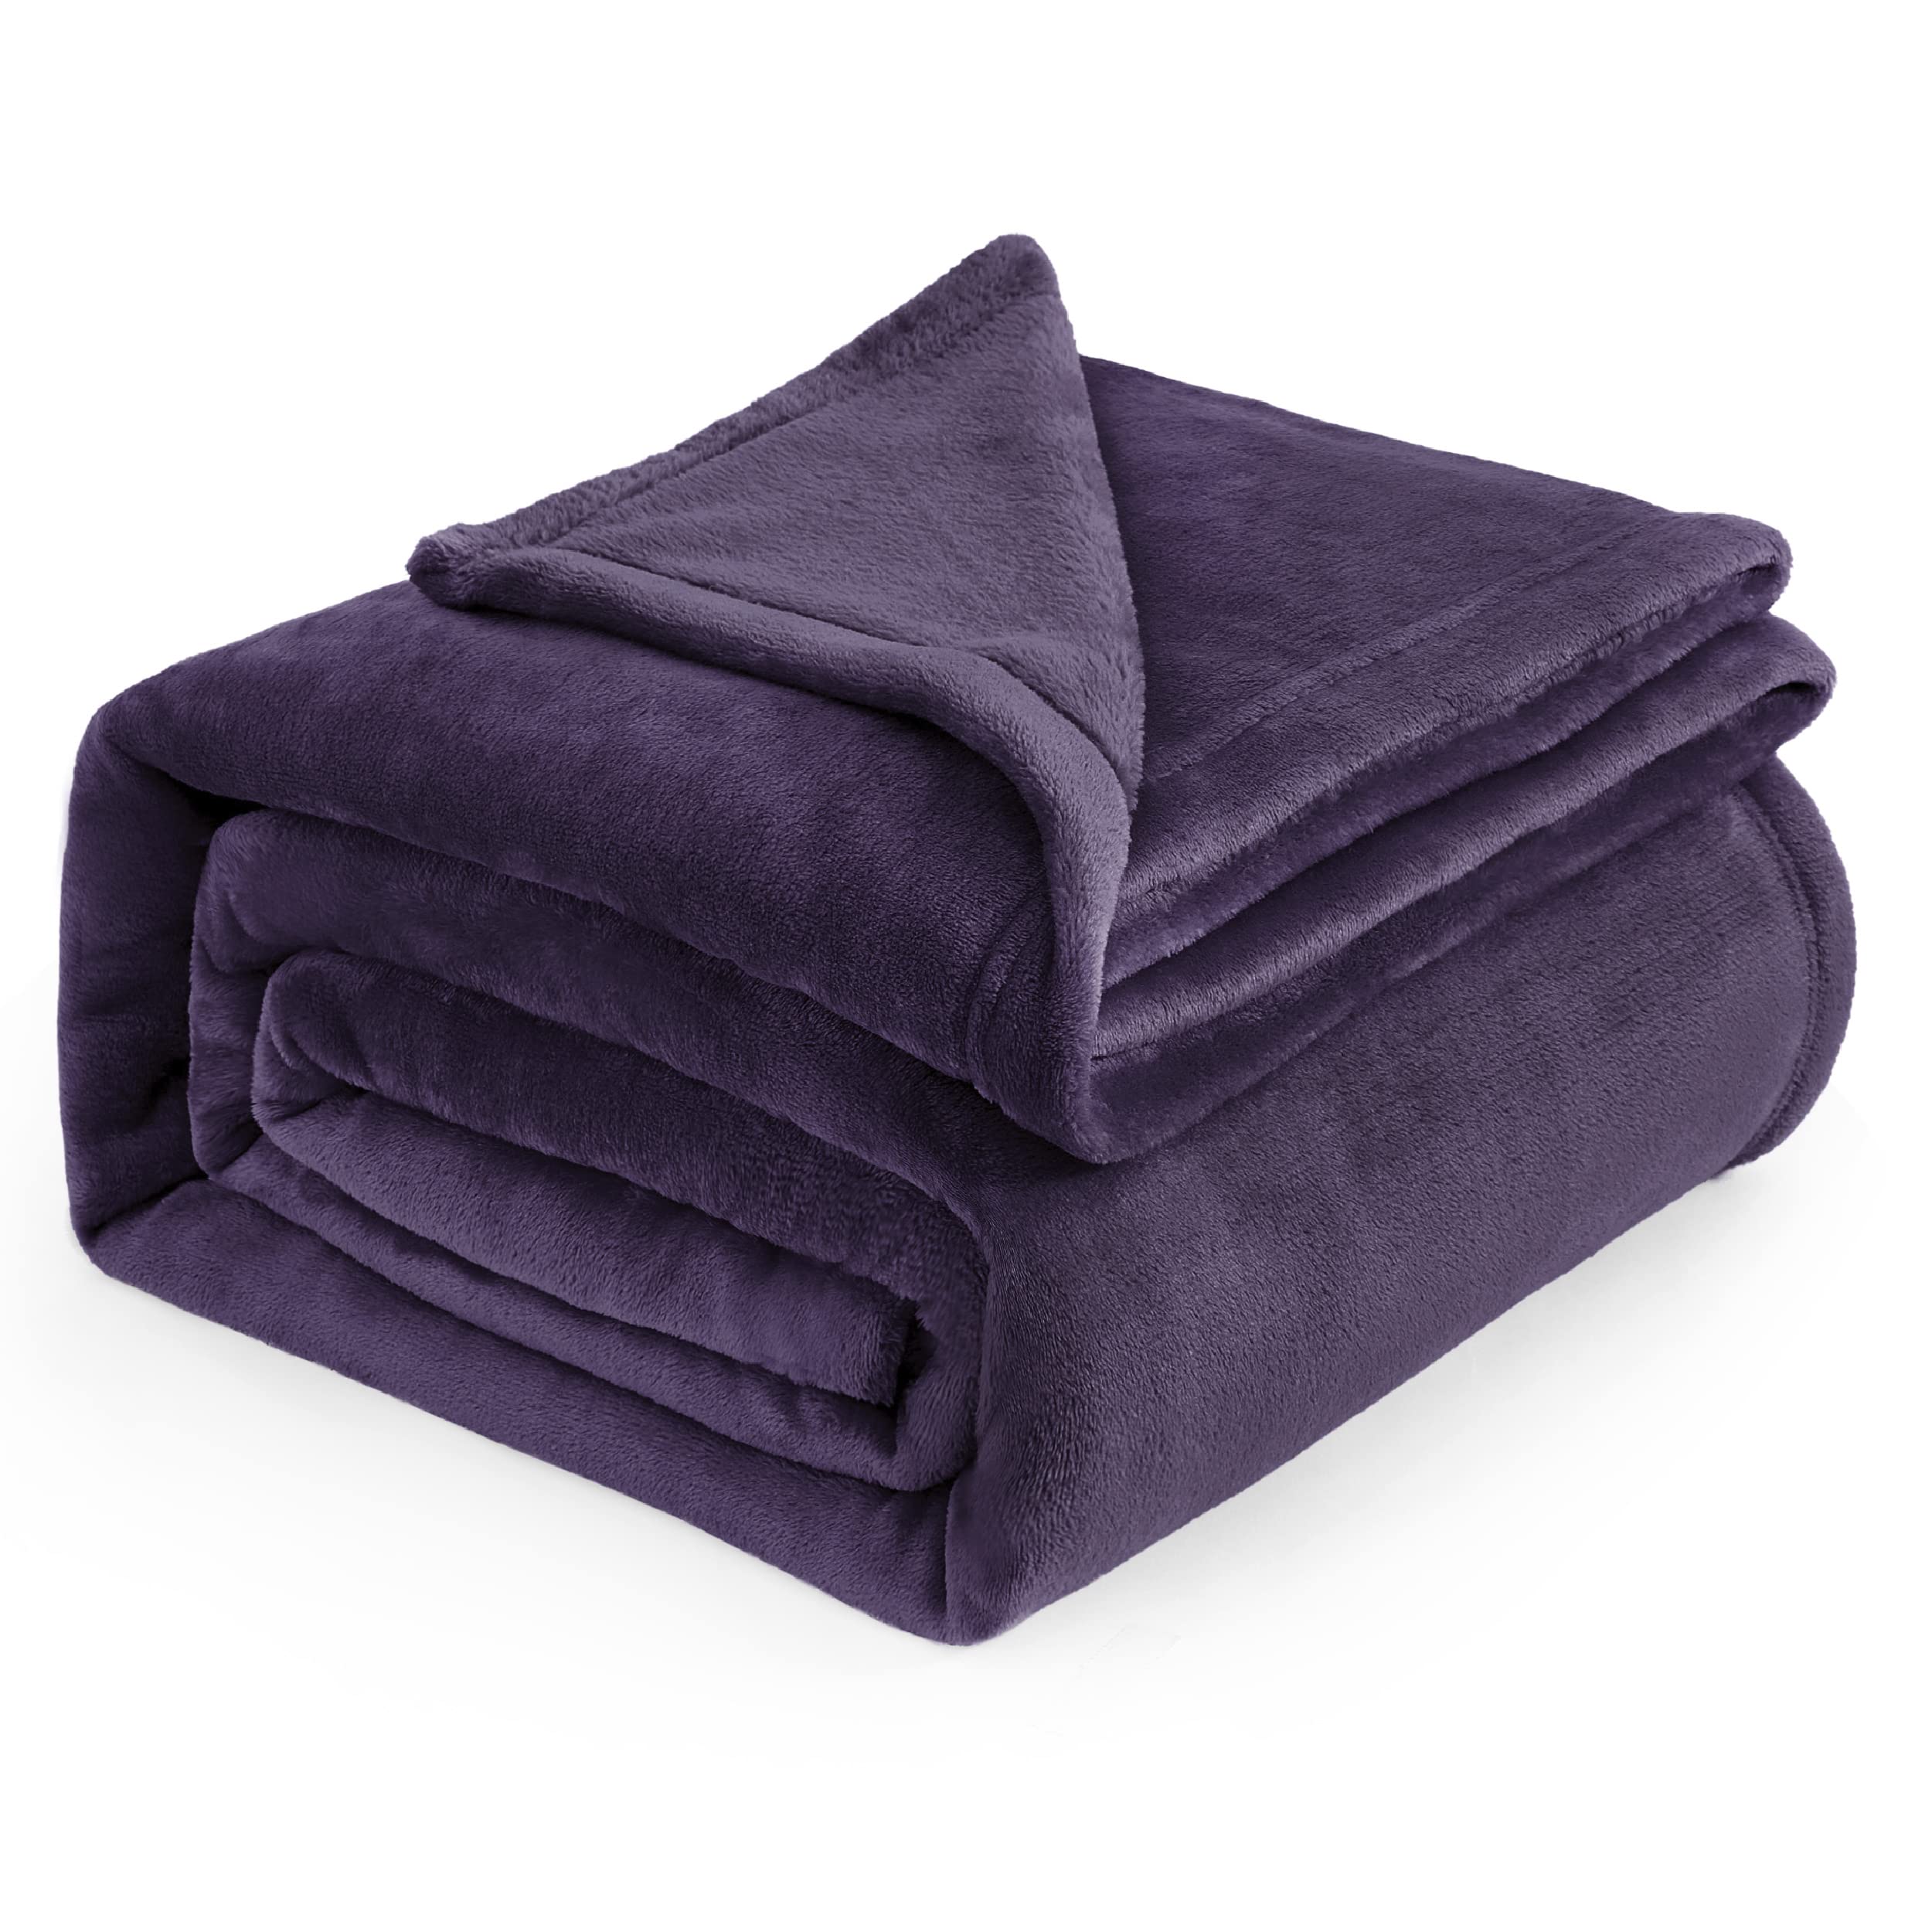 Book Cover Bedsure Fleece Blanket Queen Blanket Purple - Bed Blanket Soft Lightweight Plush Fuzzy Cozy Luxury Microfiber, 90x90 inches Queen (90